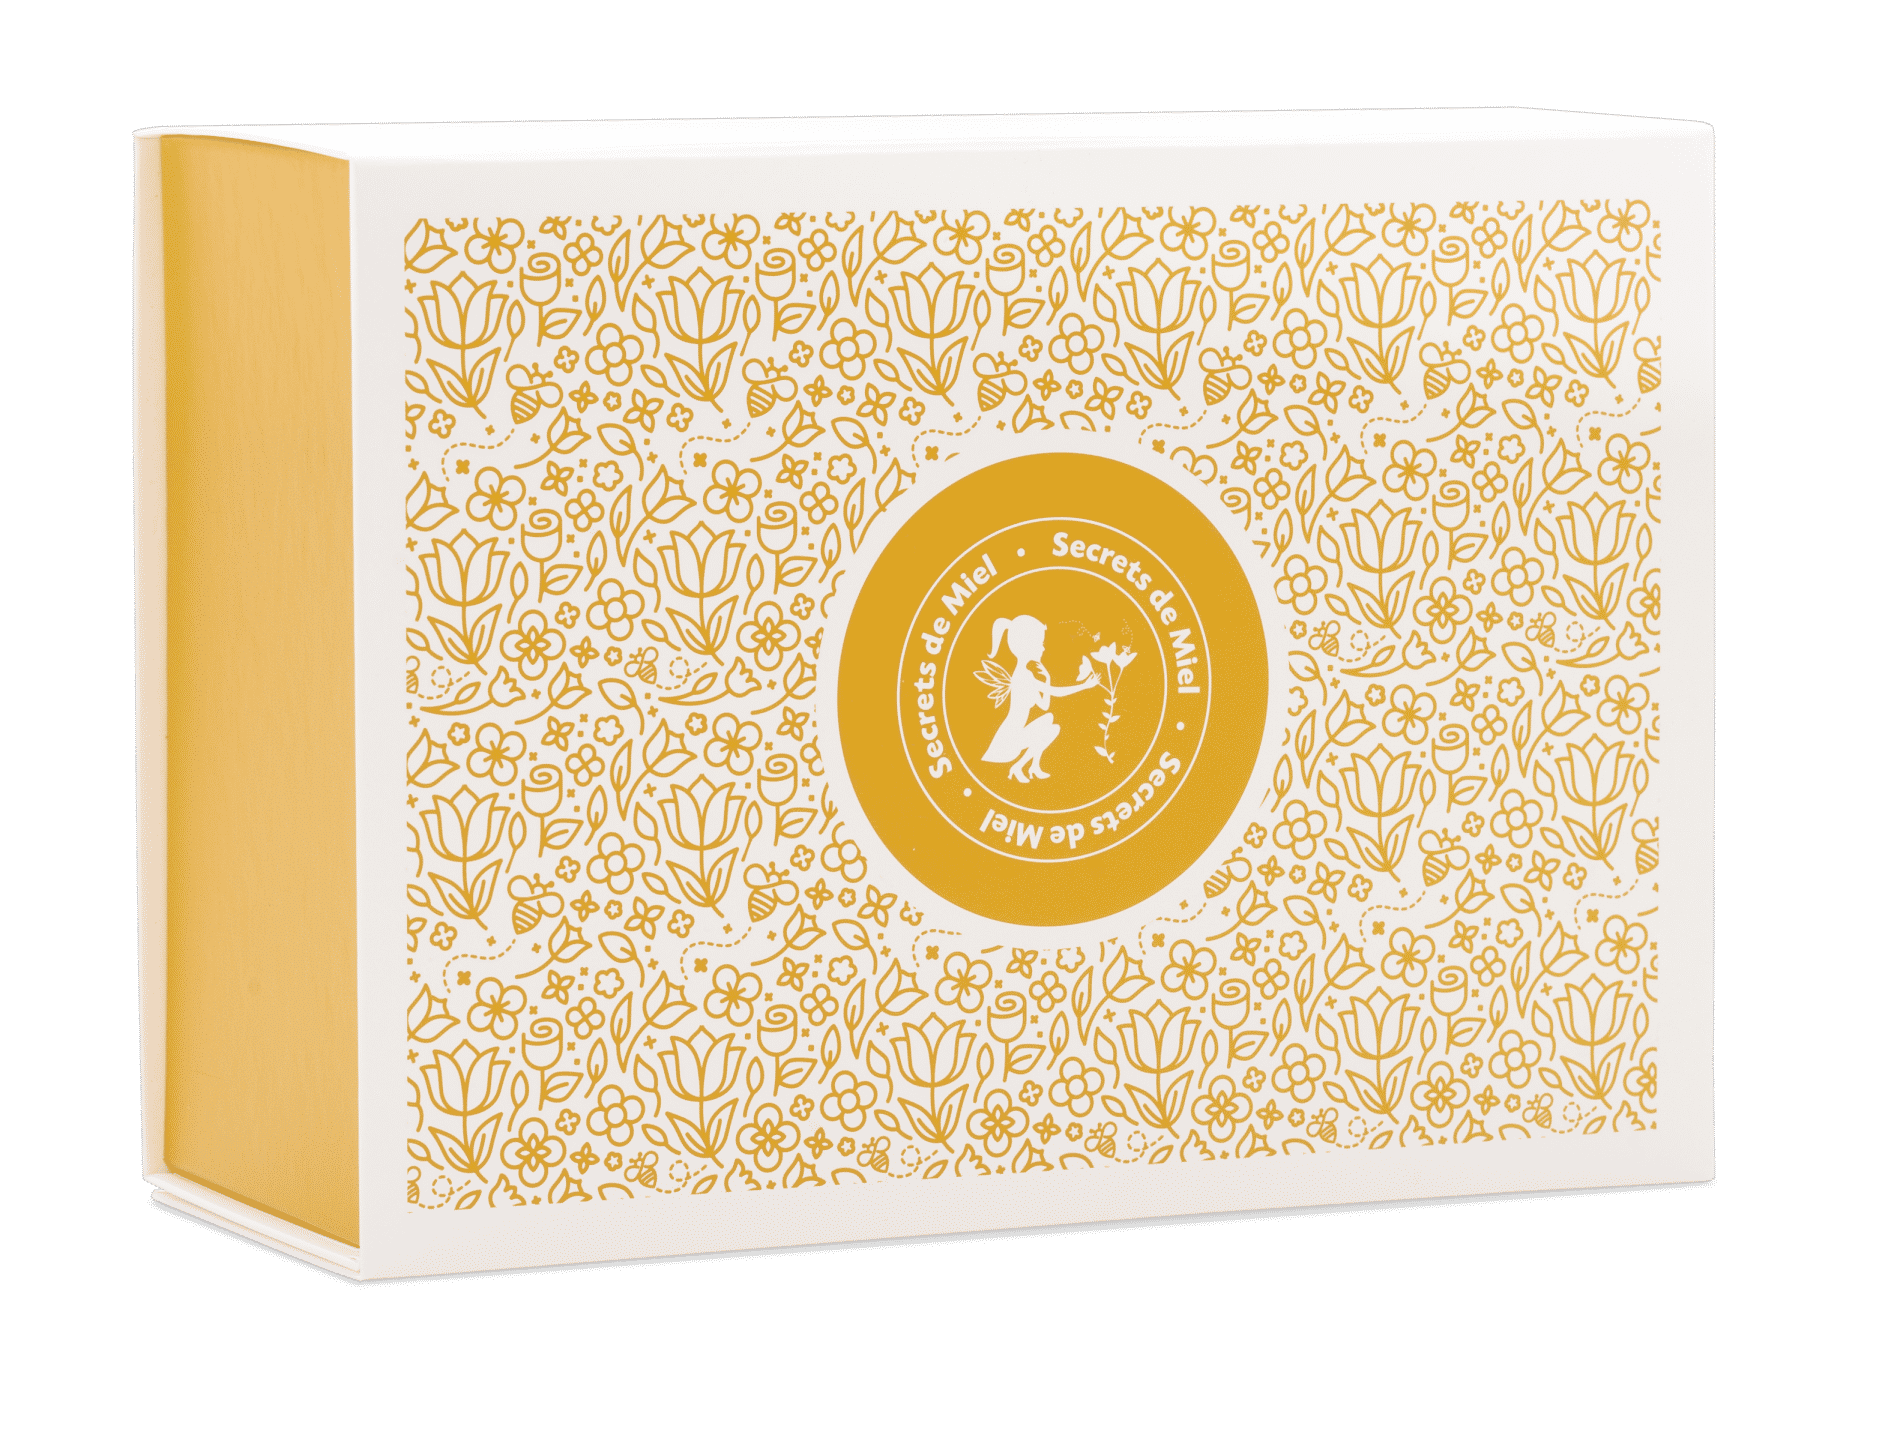 Secrets de Miel - produits miel - produits naturels - cadeaux - idées cadeaux